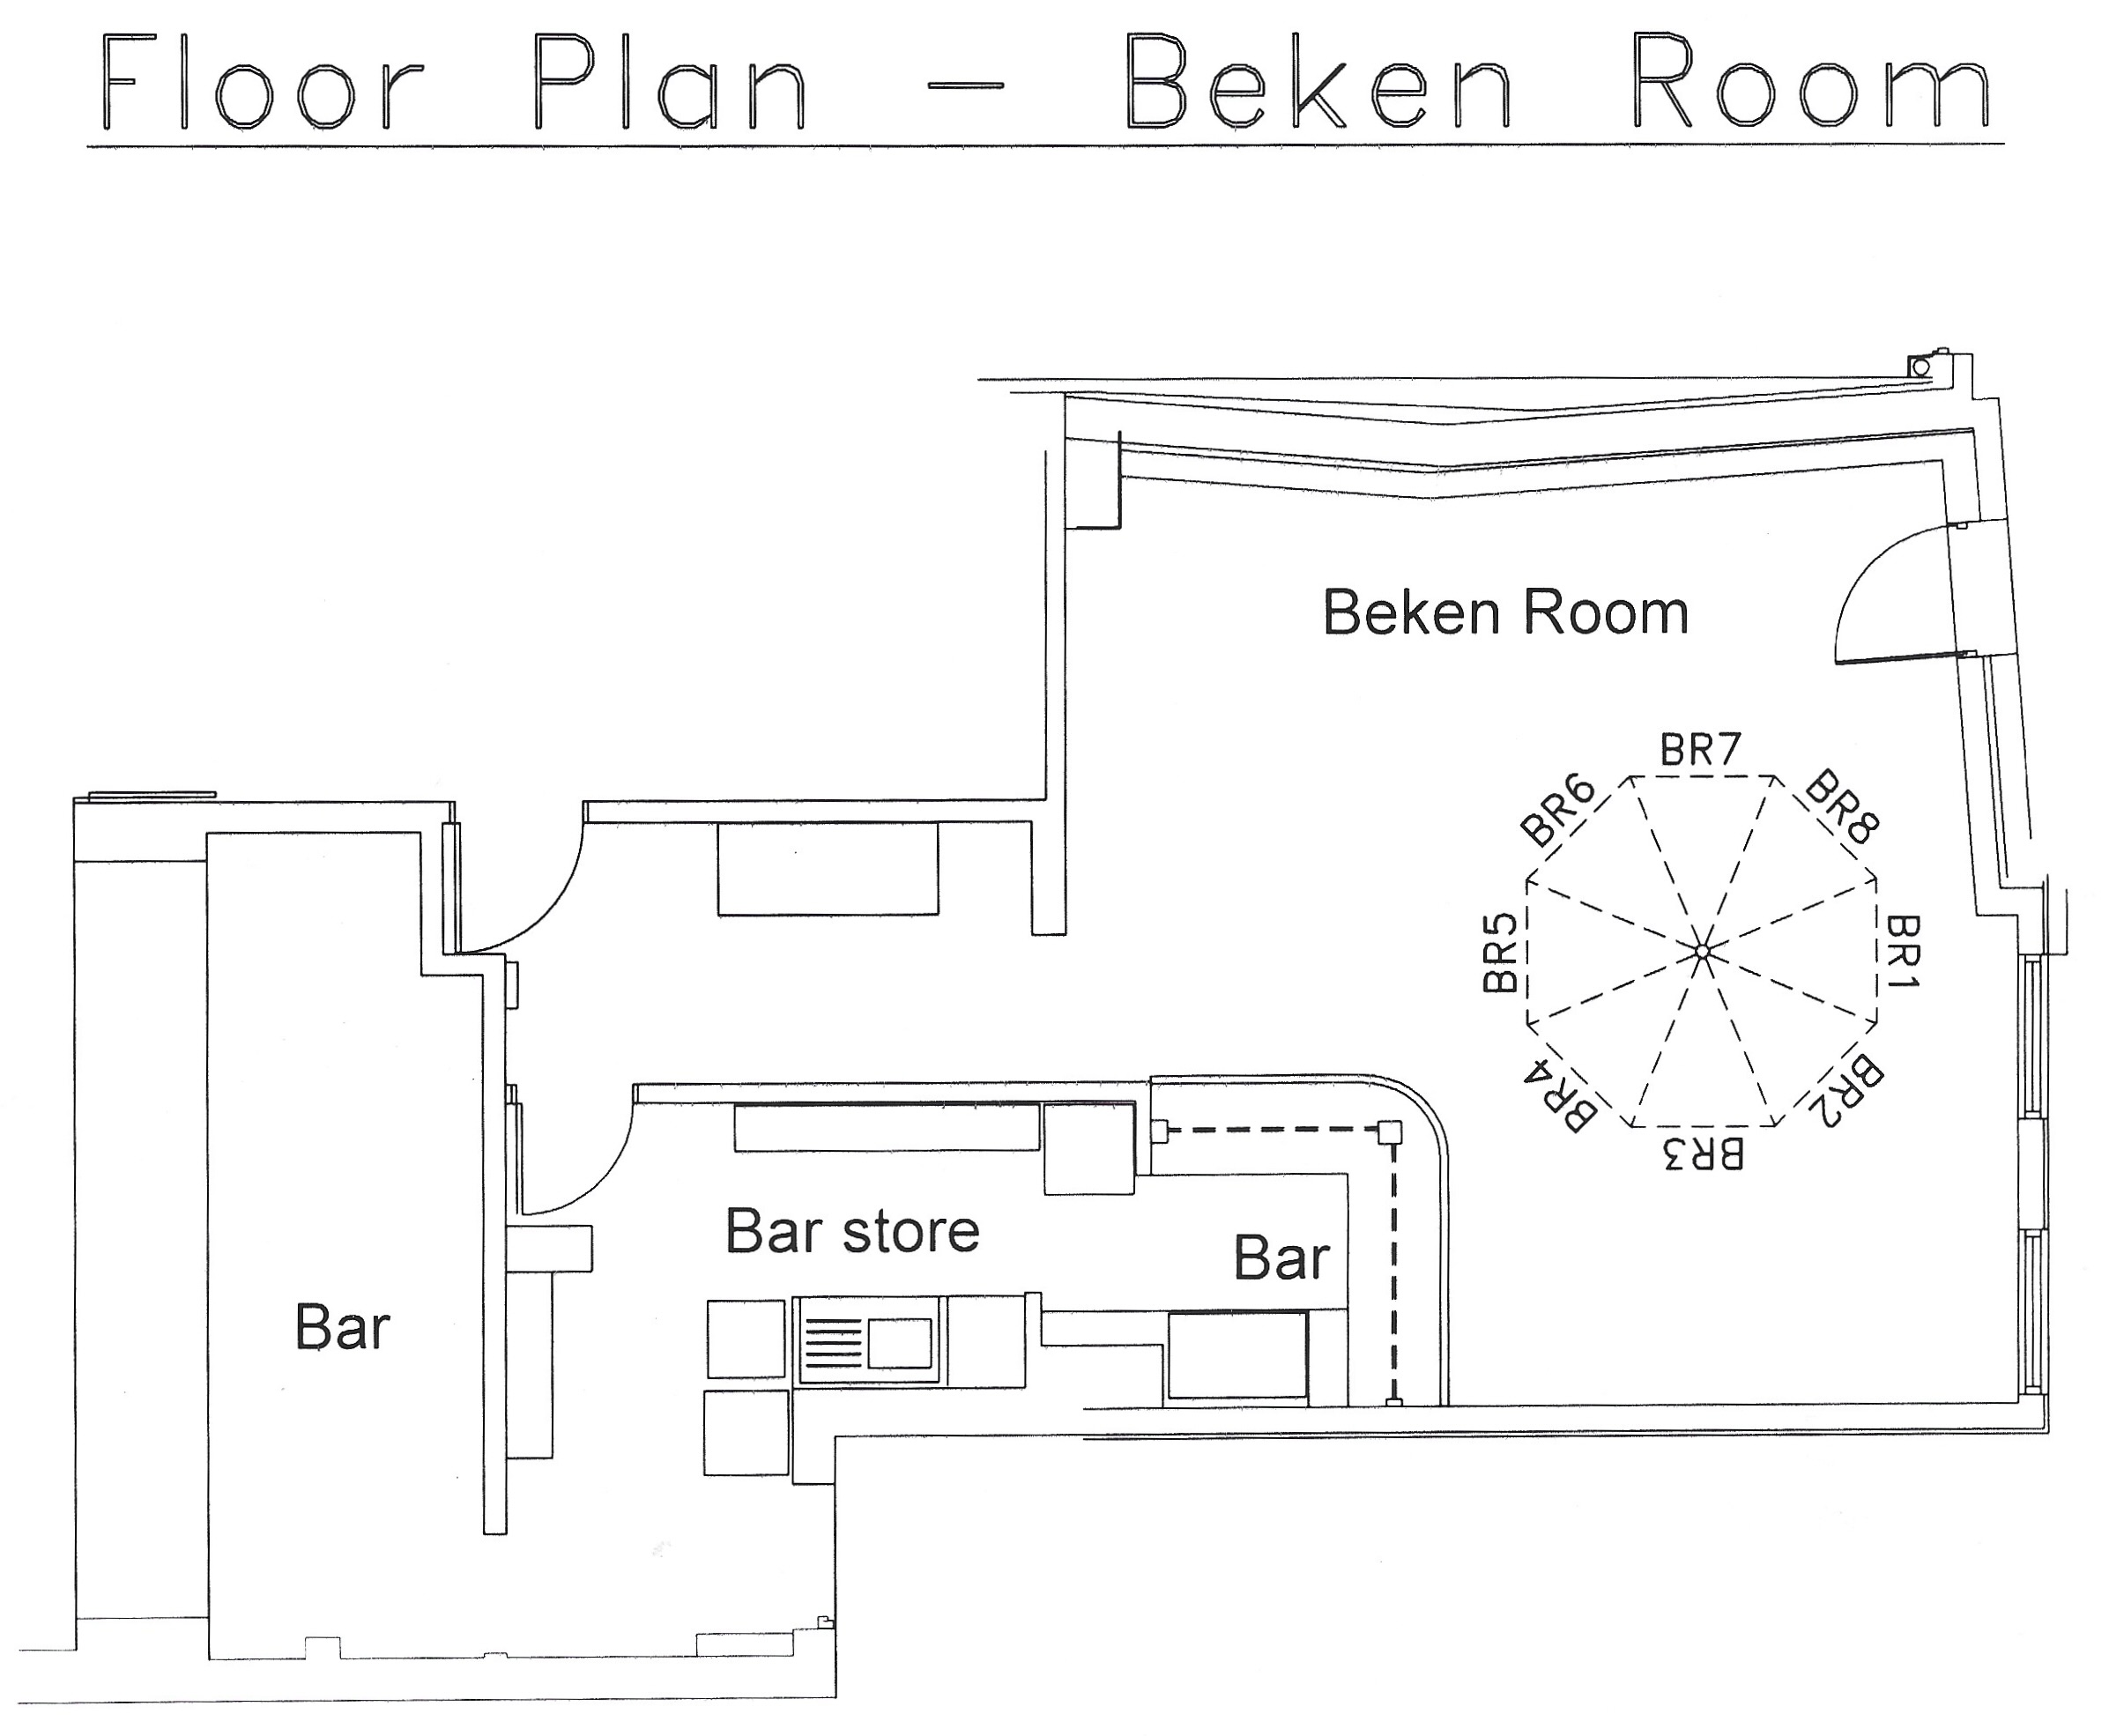 Beken Room floor plan